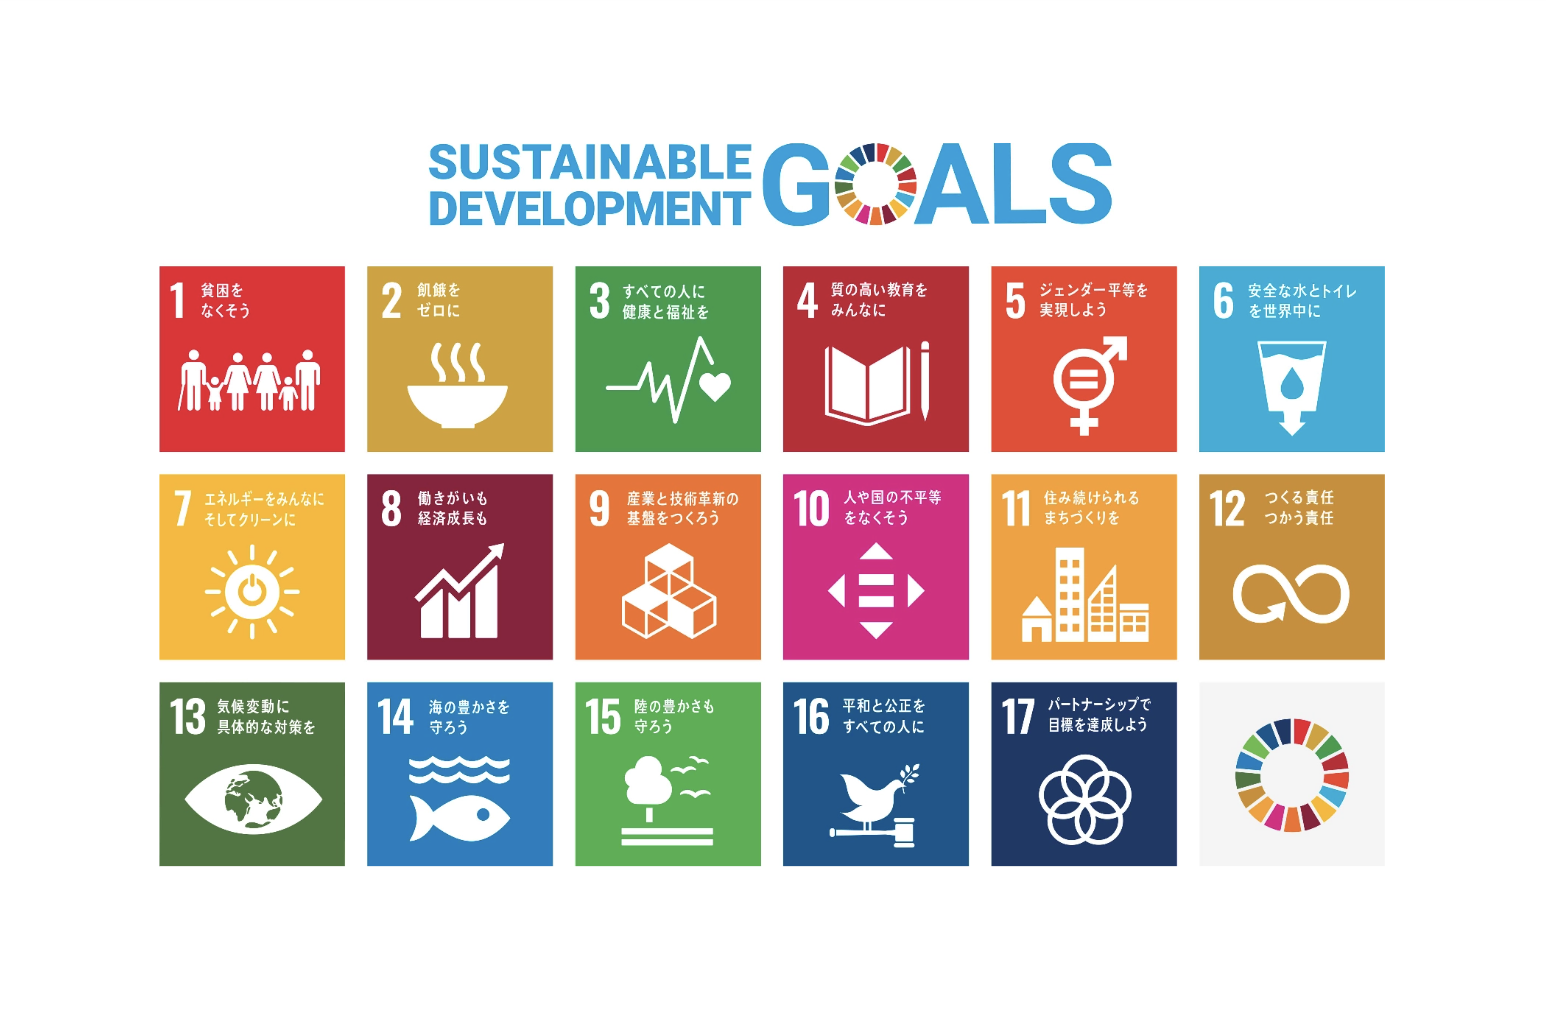 「2030年までに持続可能でよりよい世界を目指す国際目標」についての説明画像